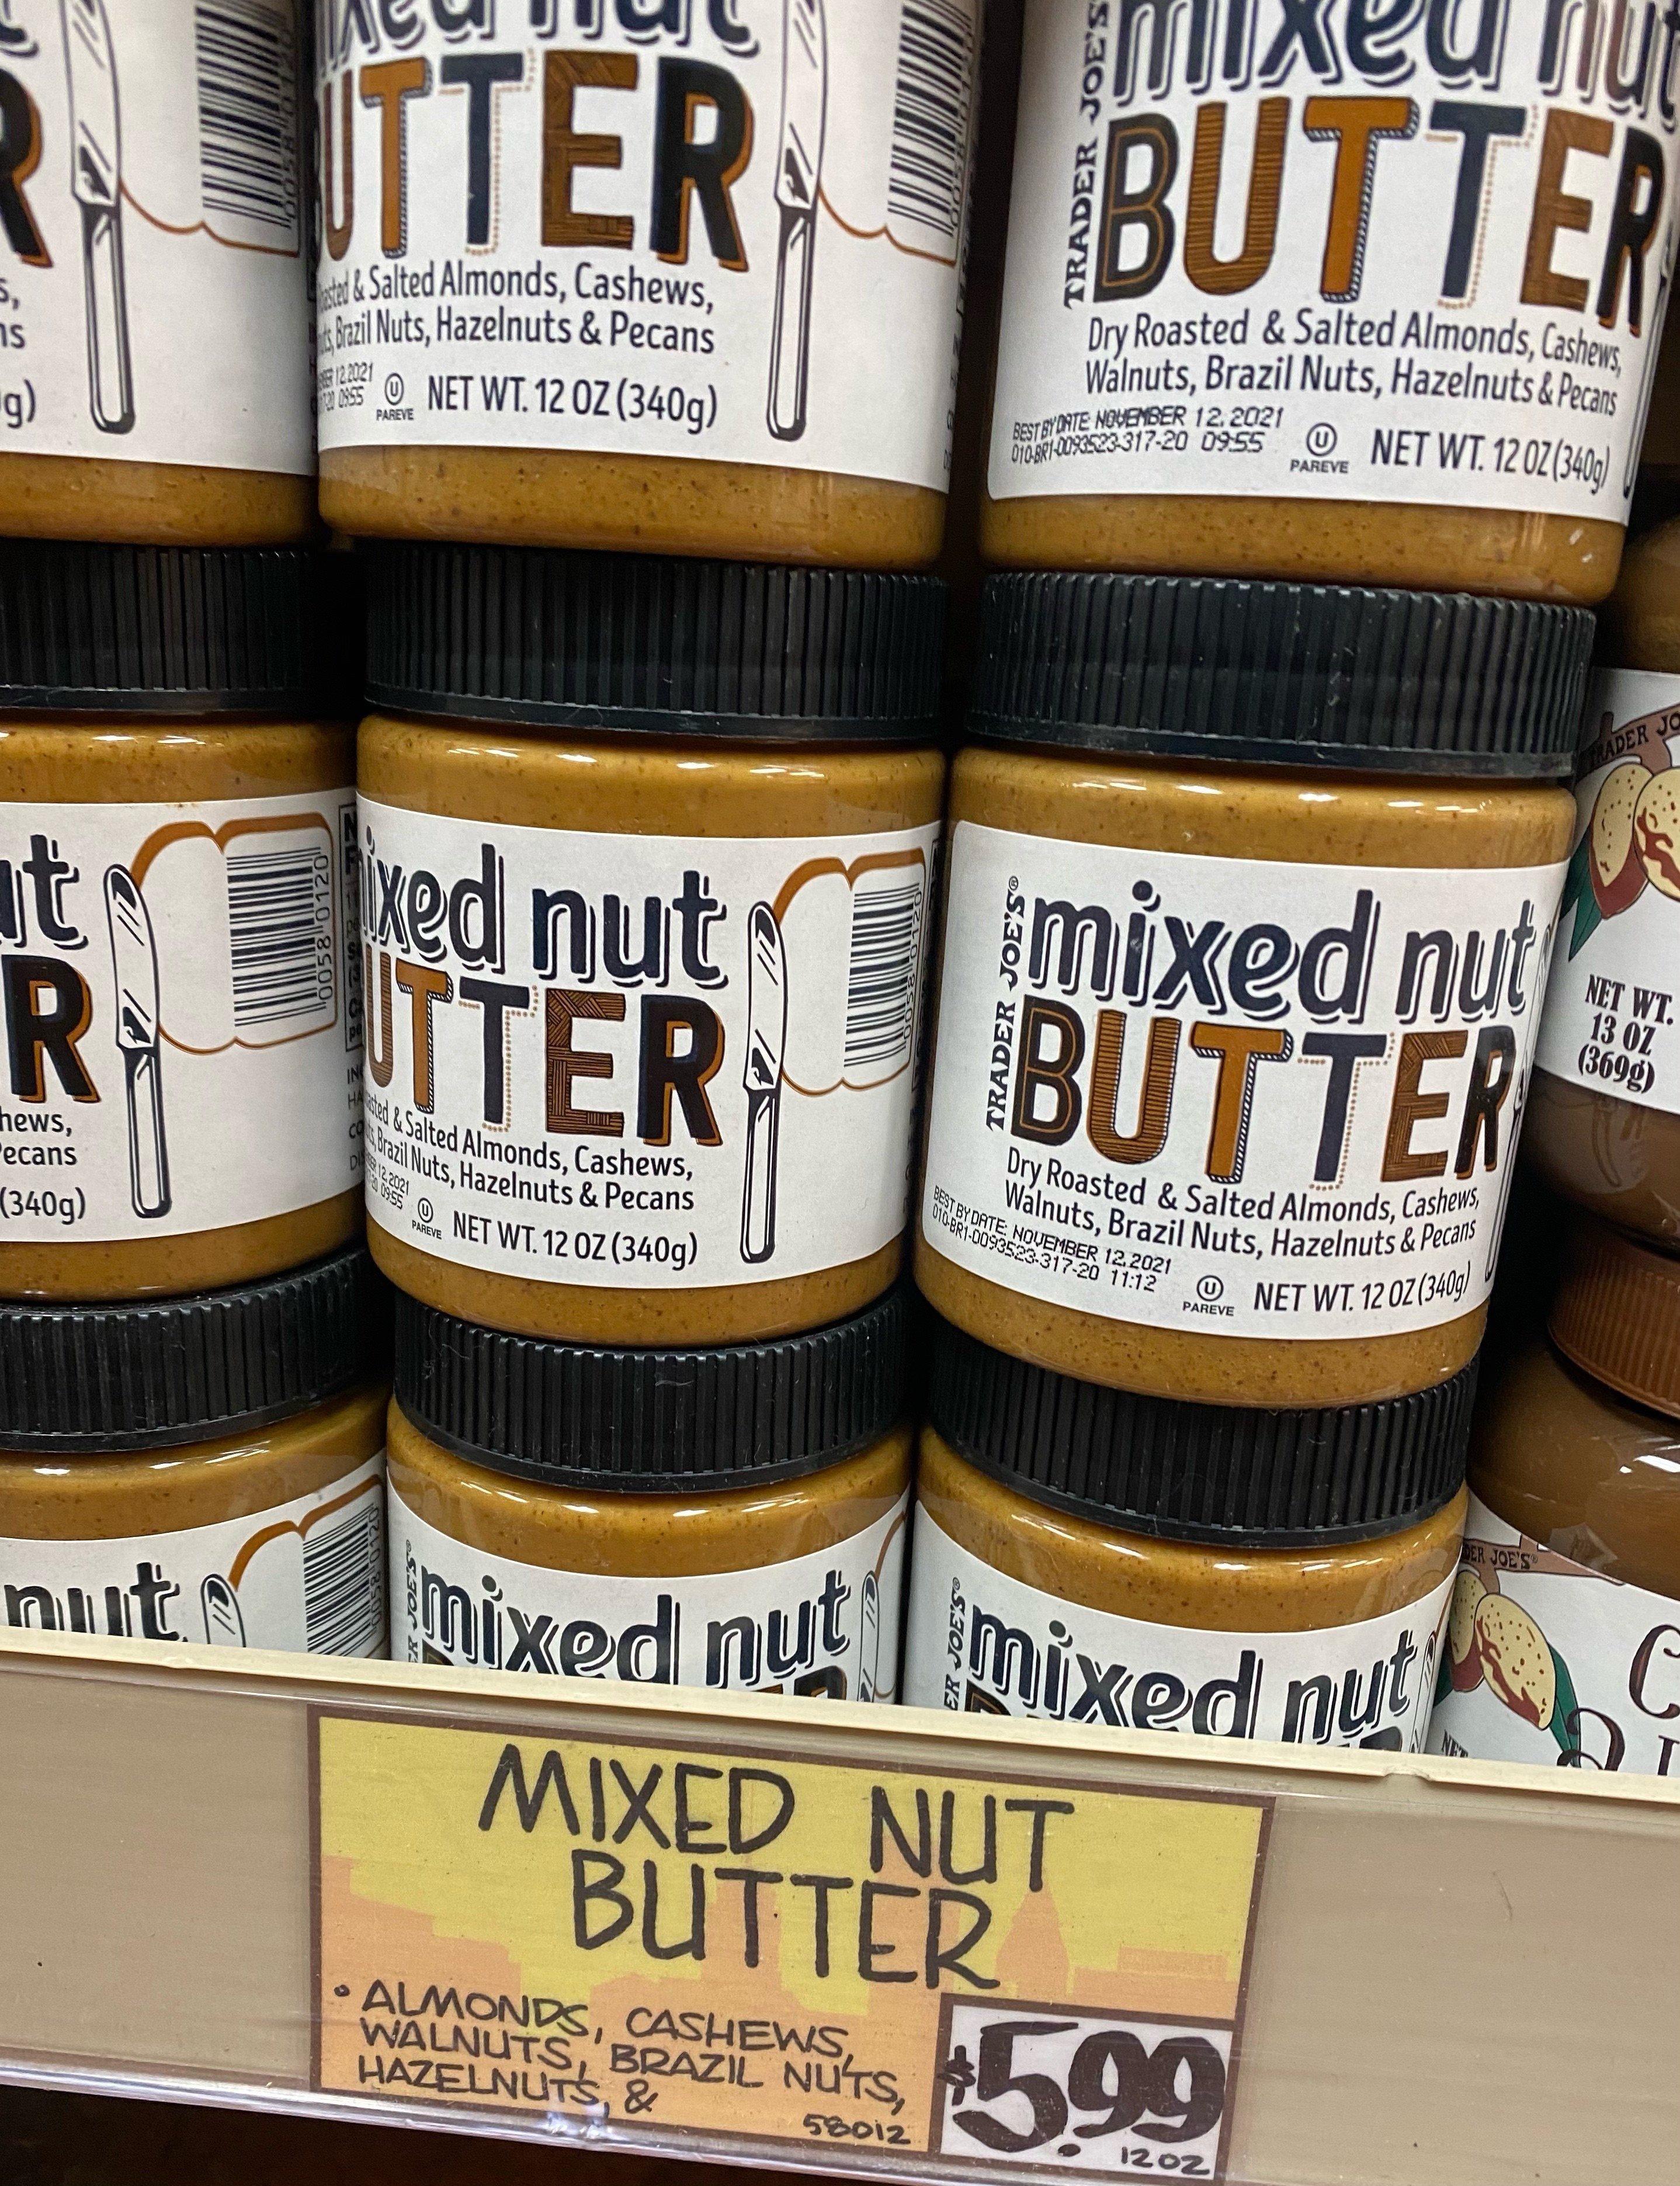 Mixed nut butter on a shelf.